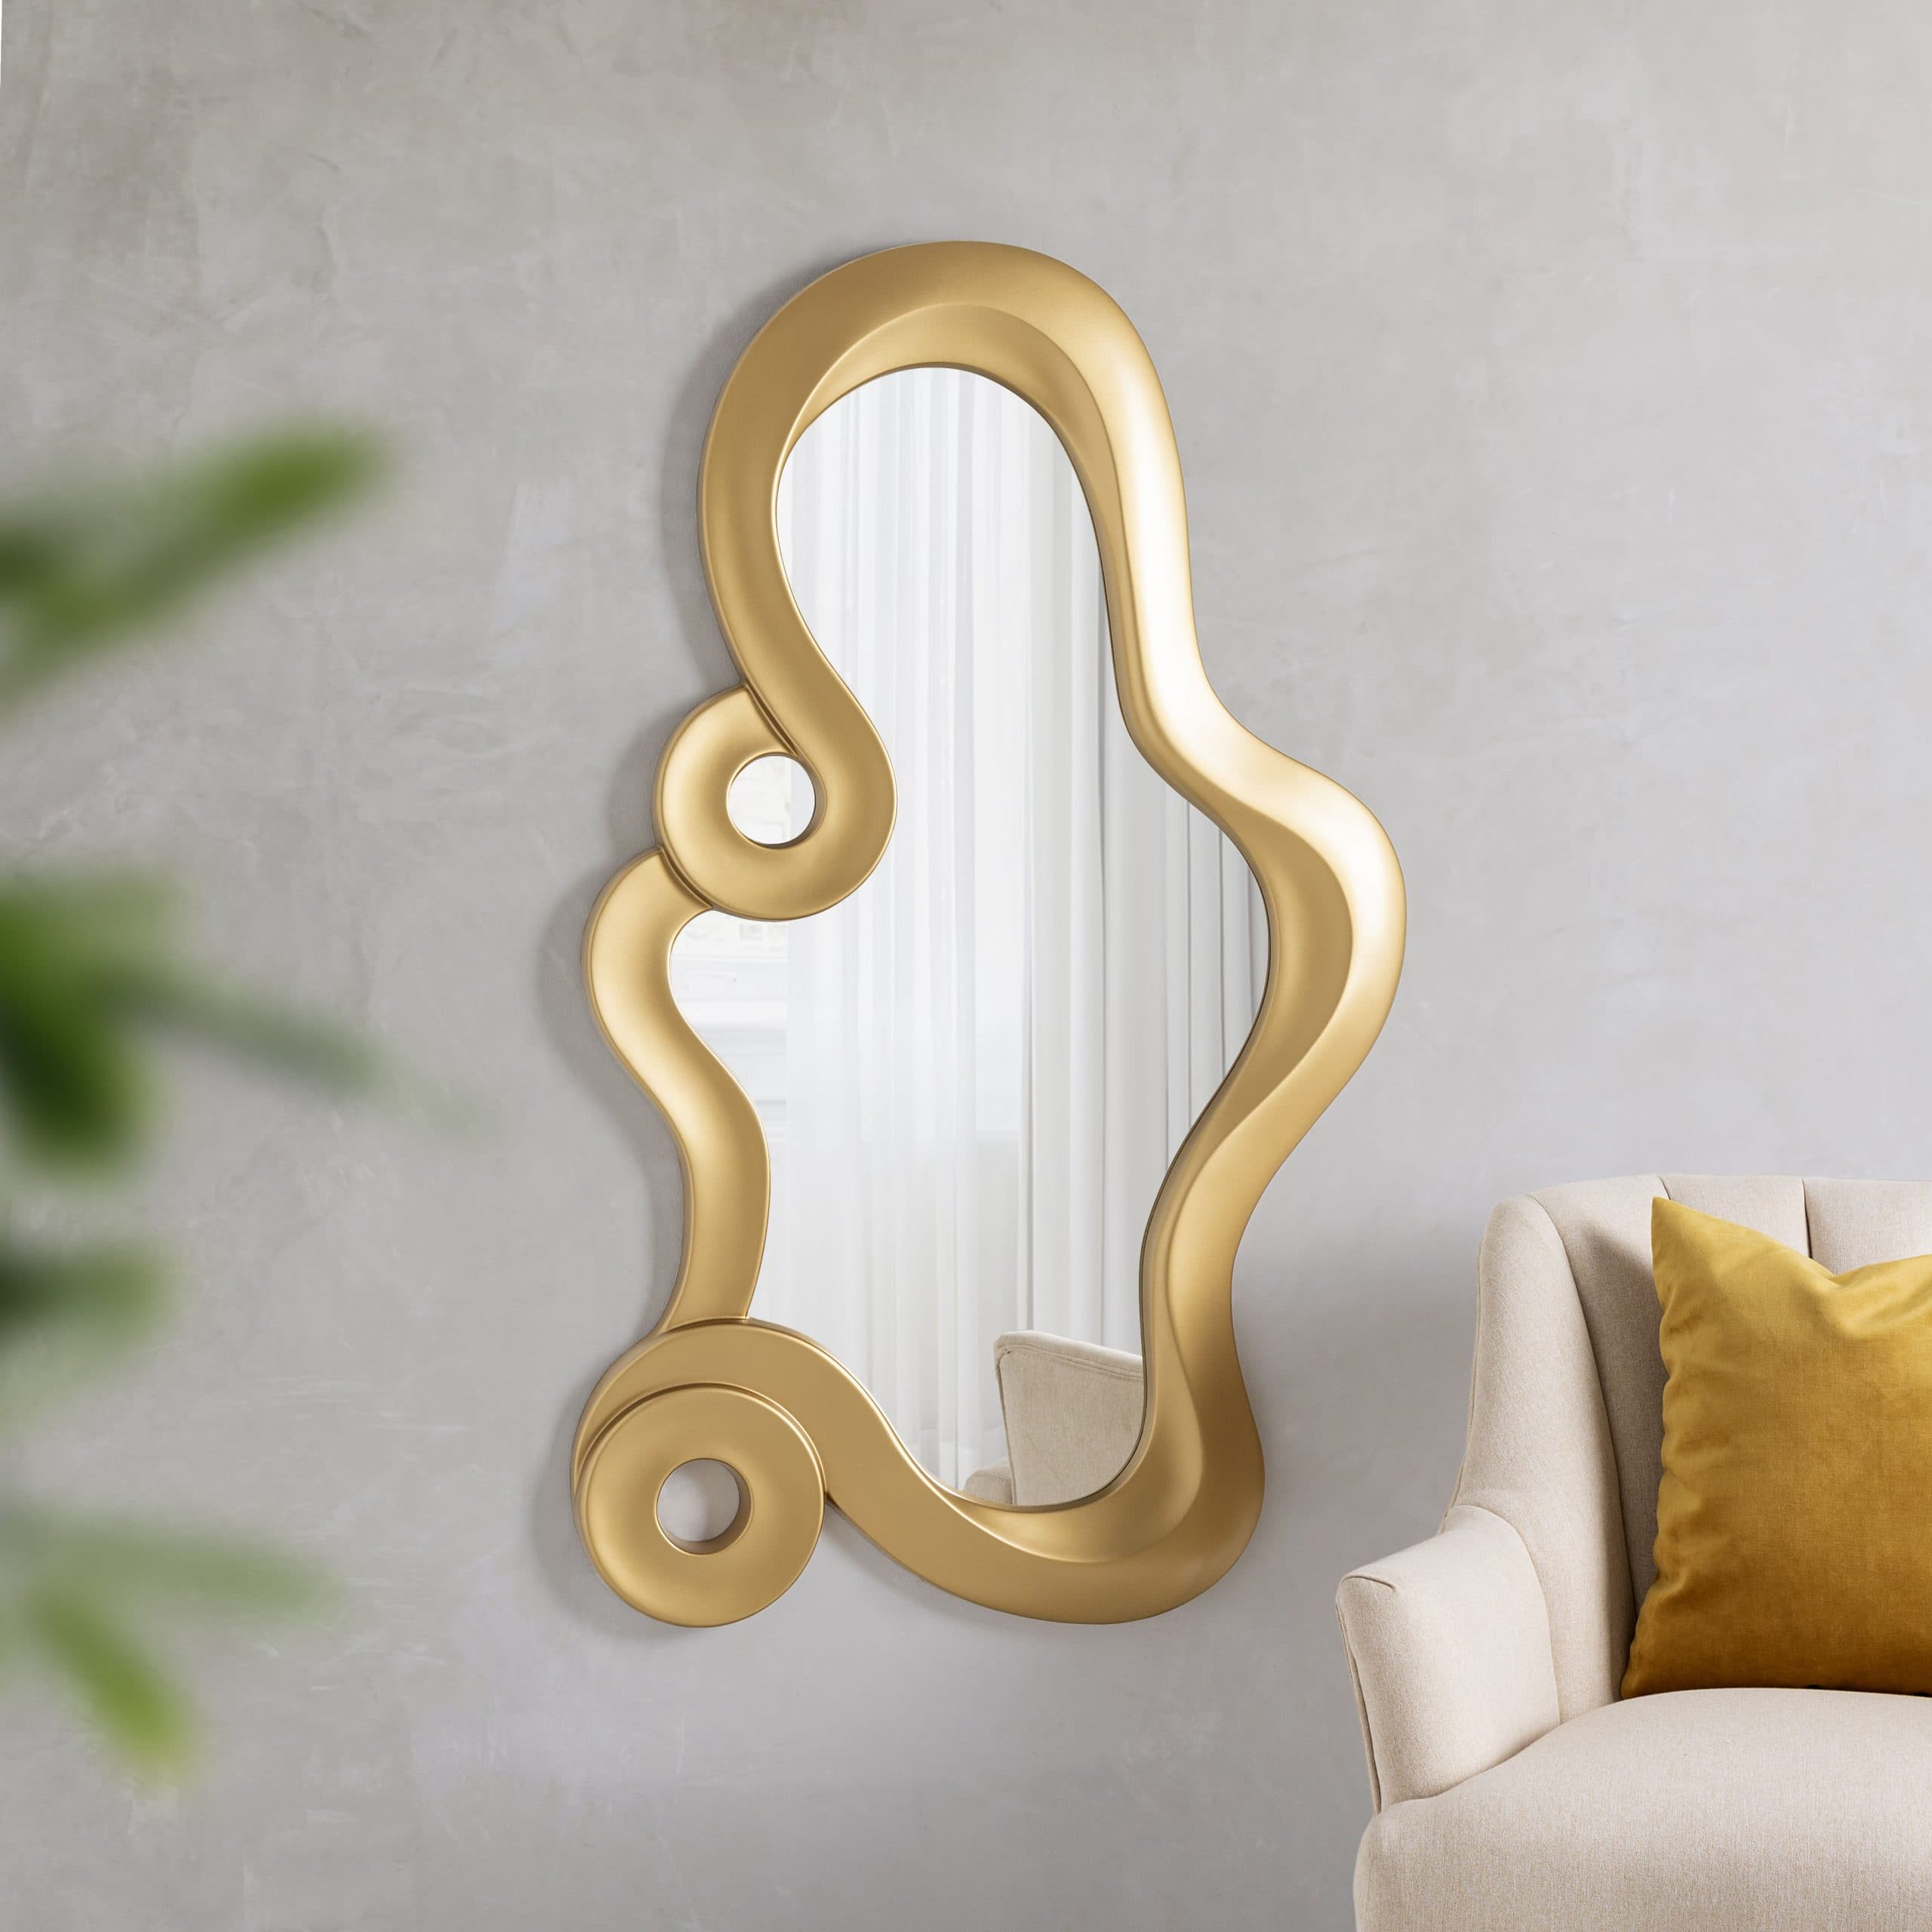 Venta online de espejo de pared dorado con filigrana.